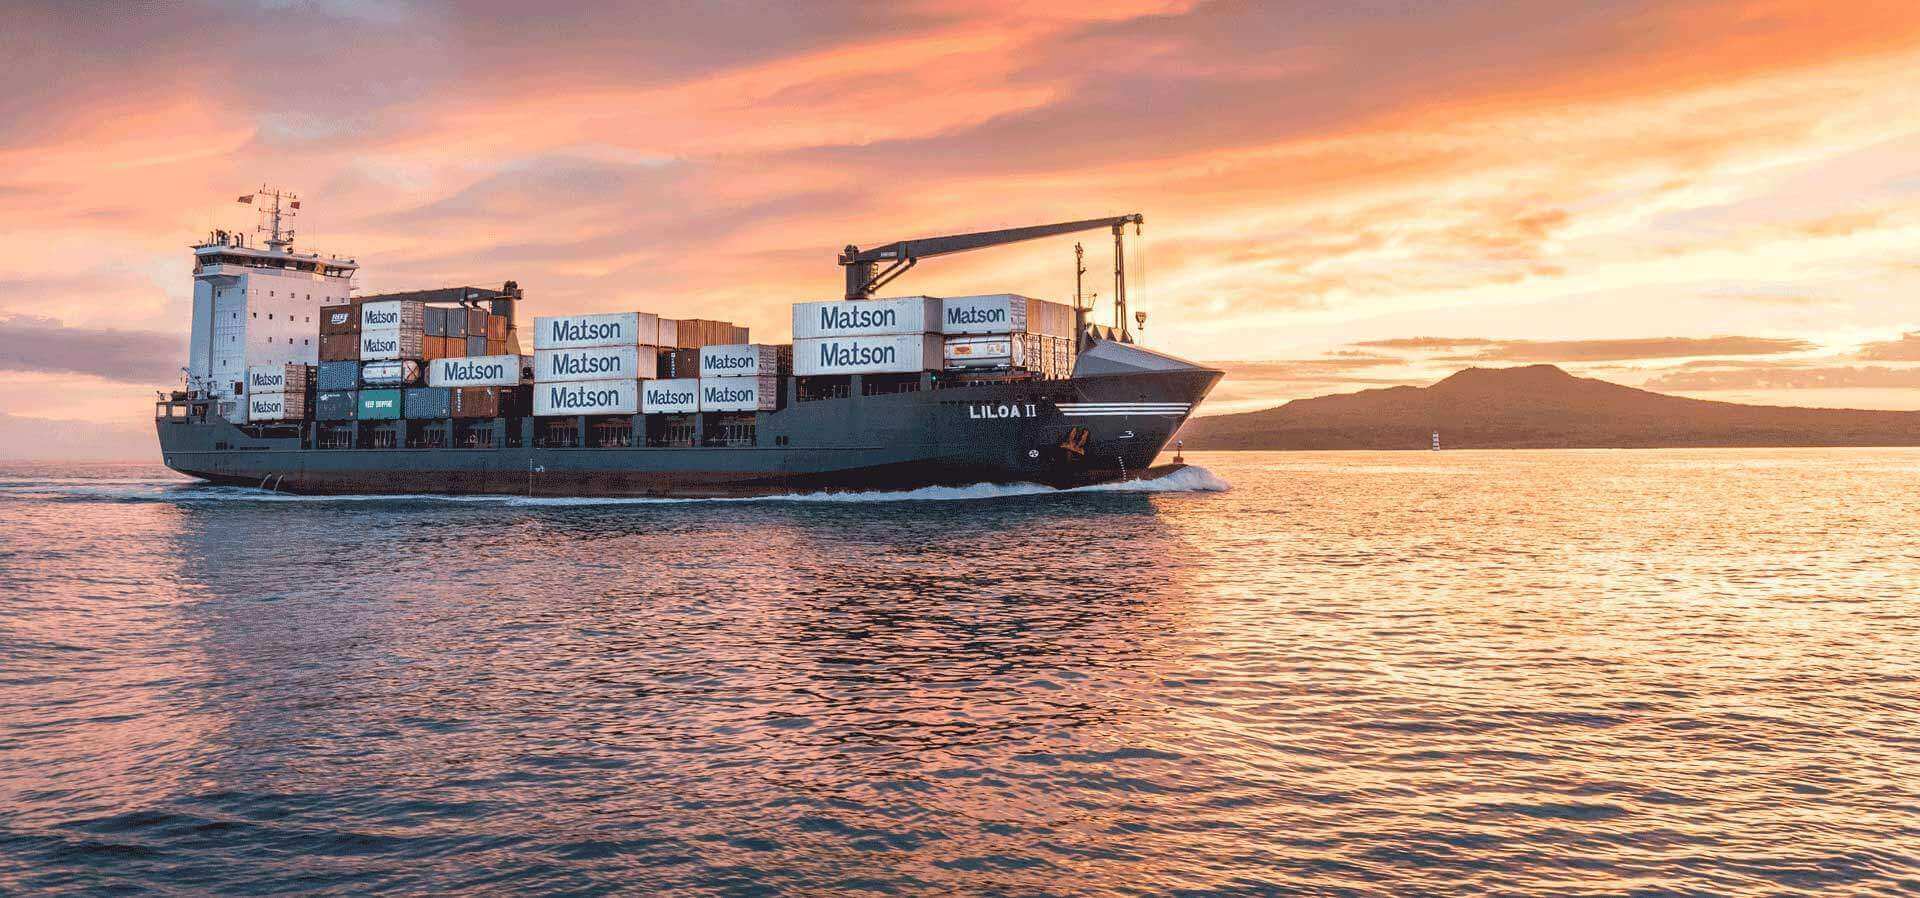 美森集装箱船Liloa II号向南太平洋运送集装箱.